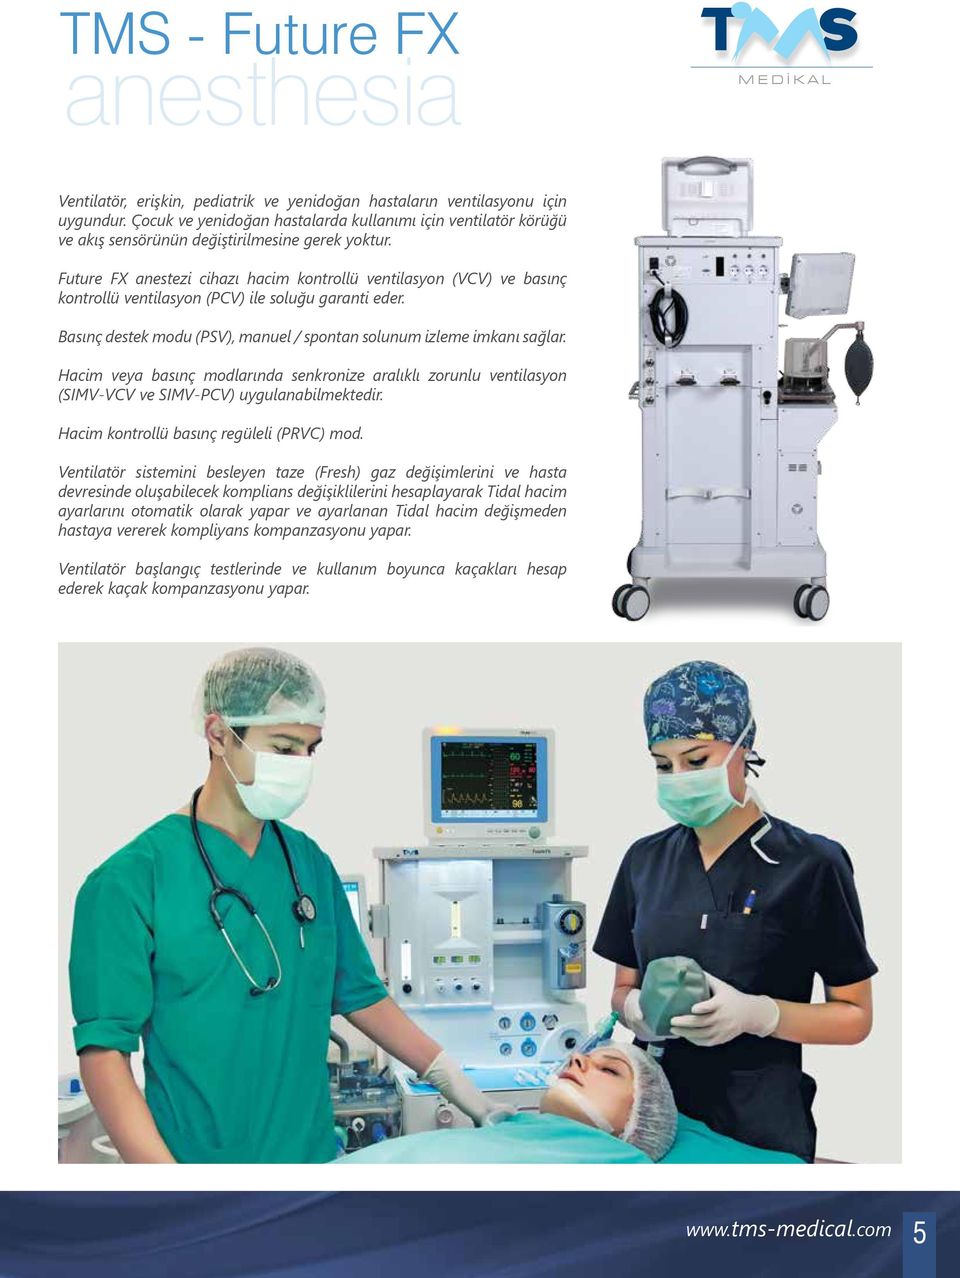 Future FX anestezi cihazı hacim kontrollü ventilasyon (VCV) ve basınç kontrollü ventilasyon (PCV) ile soluğu garanti eder. Basınç destek modu (PSV), manuel / spontan solunum izleme imkanı sağlar.